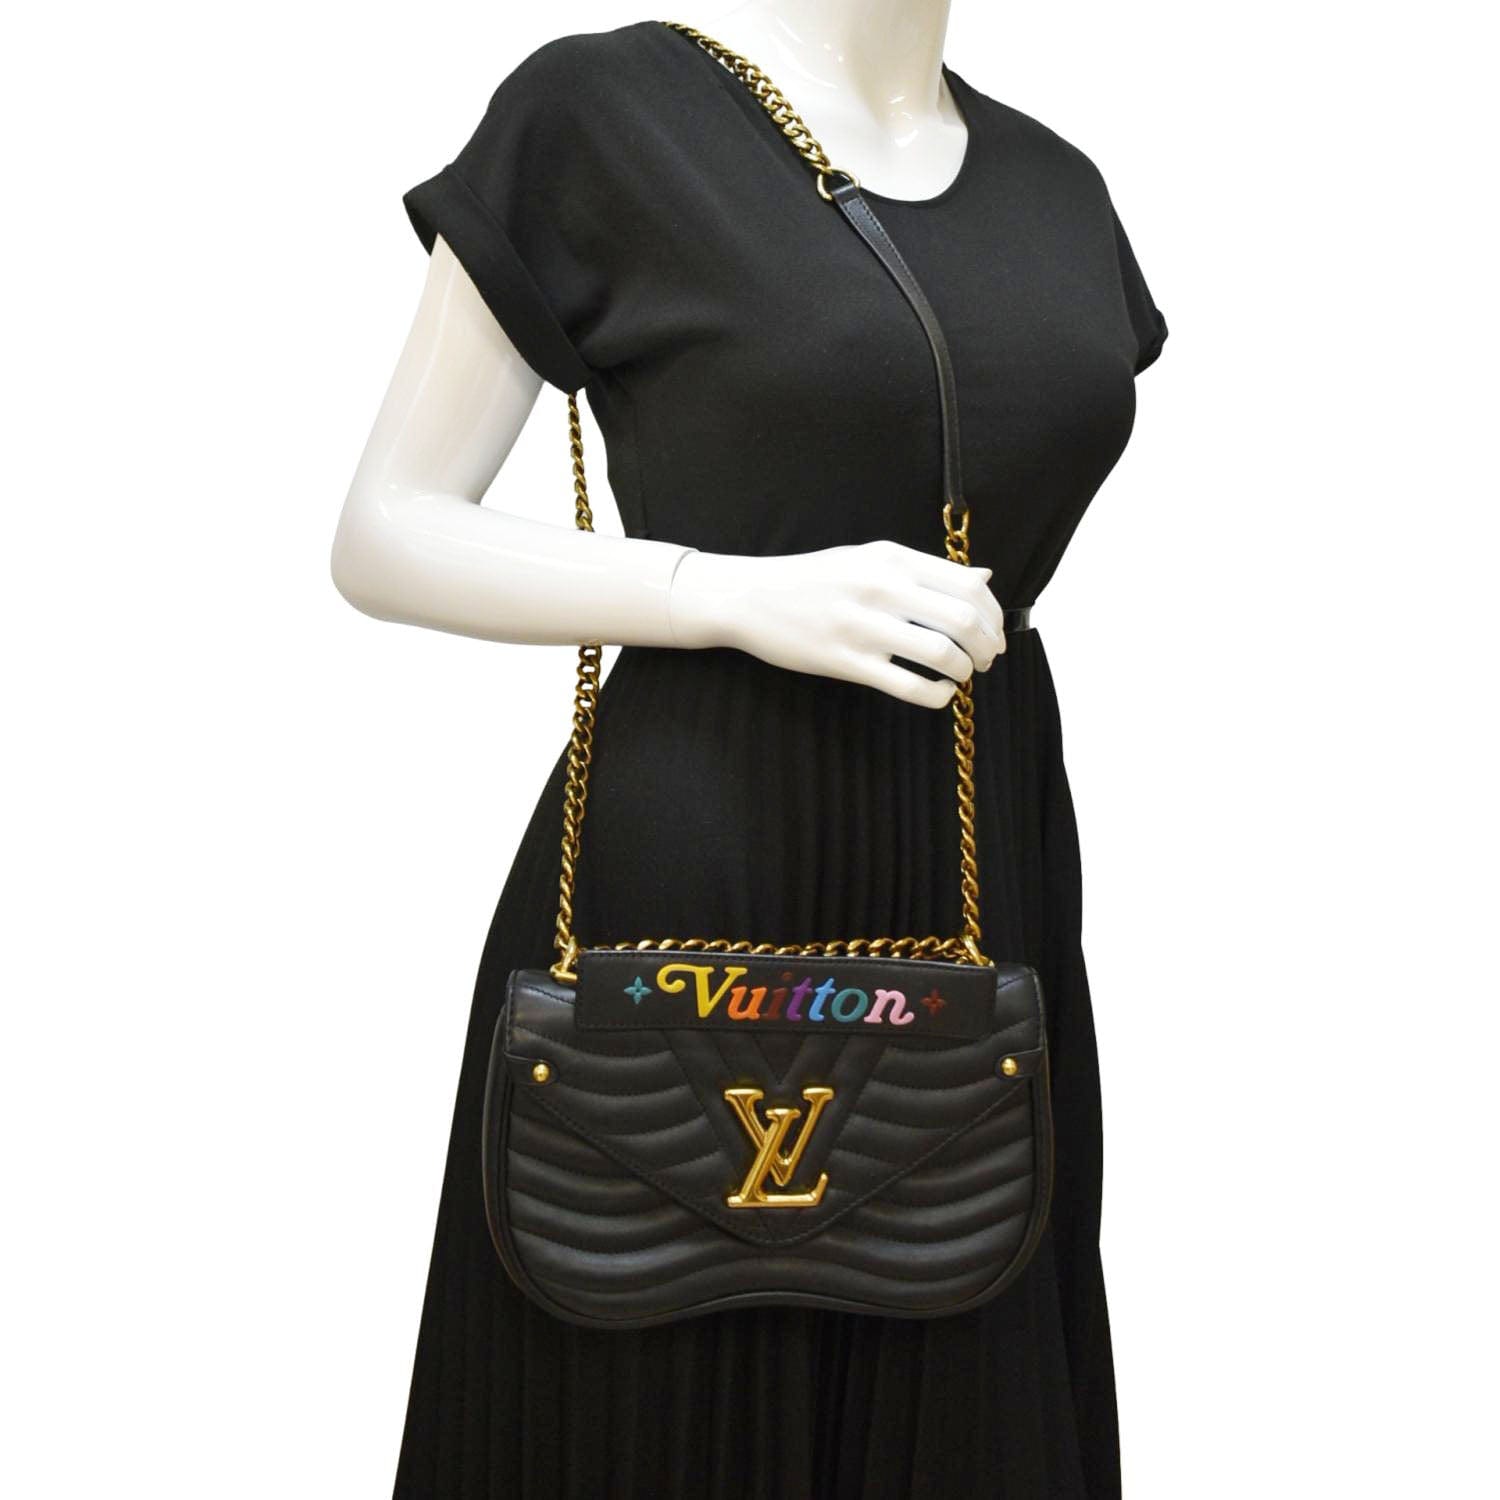 Louis Vuitton New Wave Chain Shoulder Bag